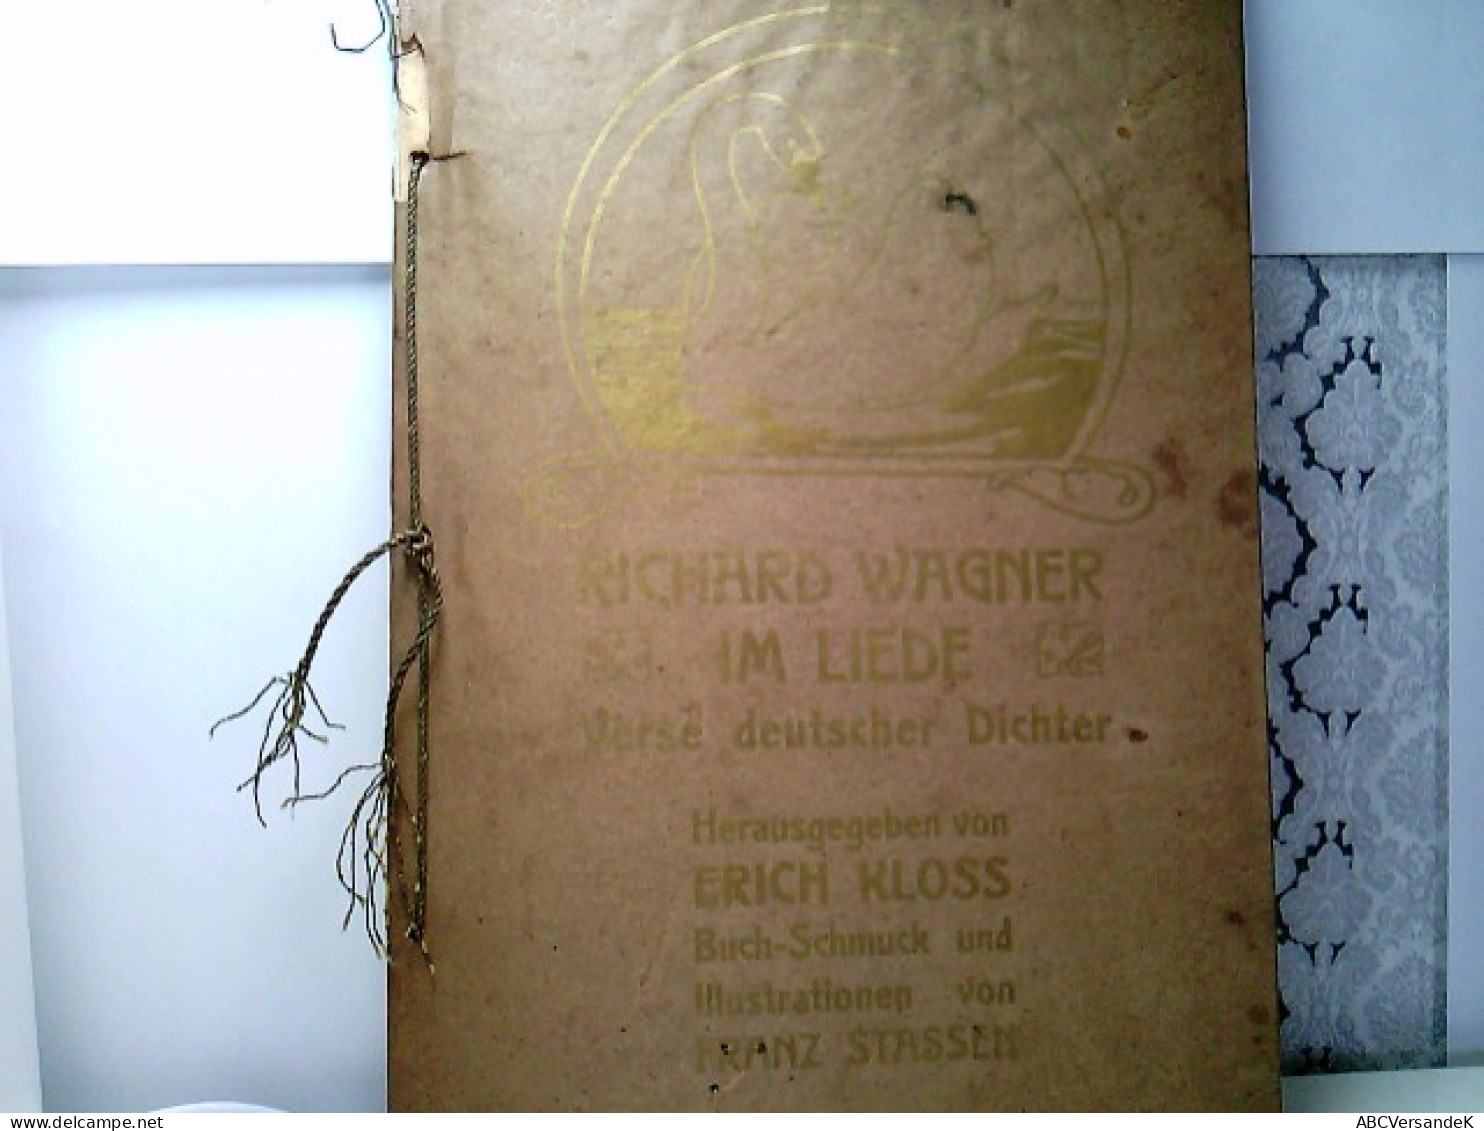 Richard Wagner Im Liede. Verse Deutscher Dichter. - Autori Tedeschi